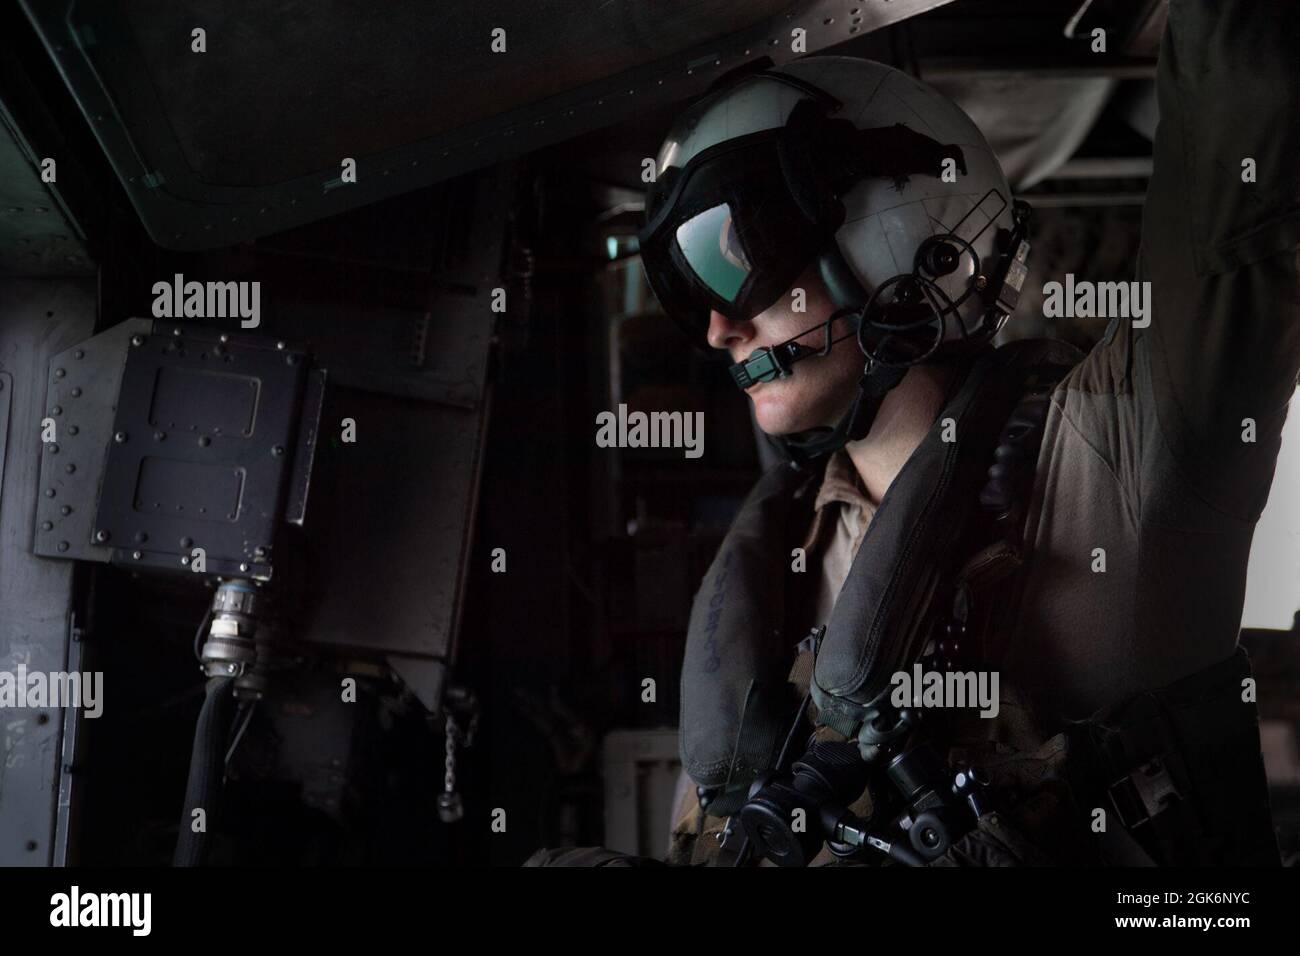 210817-N-ZA692-0010 ARABISCHER GOLF (AUG 17, 2021) – Naval Aircrewman (Hubschrauber) 2nd Class Bryan Wall, zugewiesen an Helicopter Mine Countermeasures Squadron (HM) 15, schaut aus dem Fenster eines MH-53E Sea Dragon Hubschraubers während des Flugsprungtrainings im Arabischen Golf, August 17. HM 15 wird in den 5. Einsatzbereich der US-Flotte eingesetzt, um Marineinteraktionen zu unterstützen, um die maritime Stabilität und Sicherheit in der Zentralregion zu gewährleisten und das Mittelmeer und den Pazifik durch den westlichen Indischen Ozean und drei strategische Engpässe zu verbinden. Stockfoto